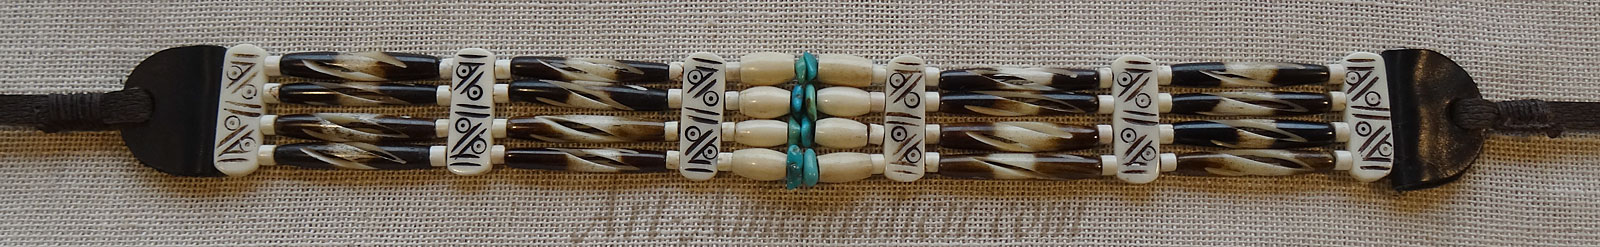 Collier ethnique ras de cou ou choker indien, 4 rangs de tubes et perles en os et turquoises, lacet en cuir.